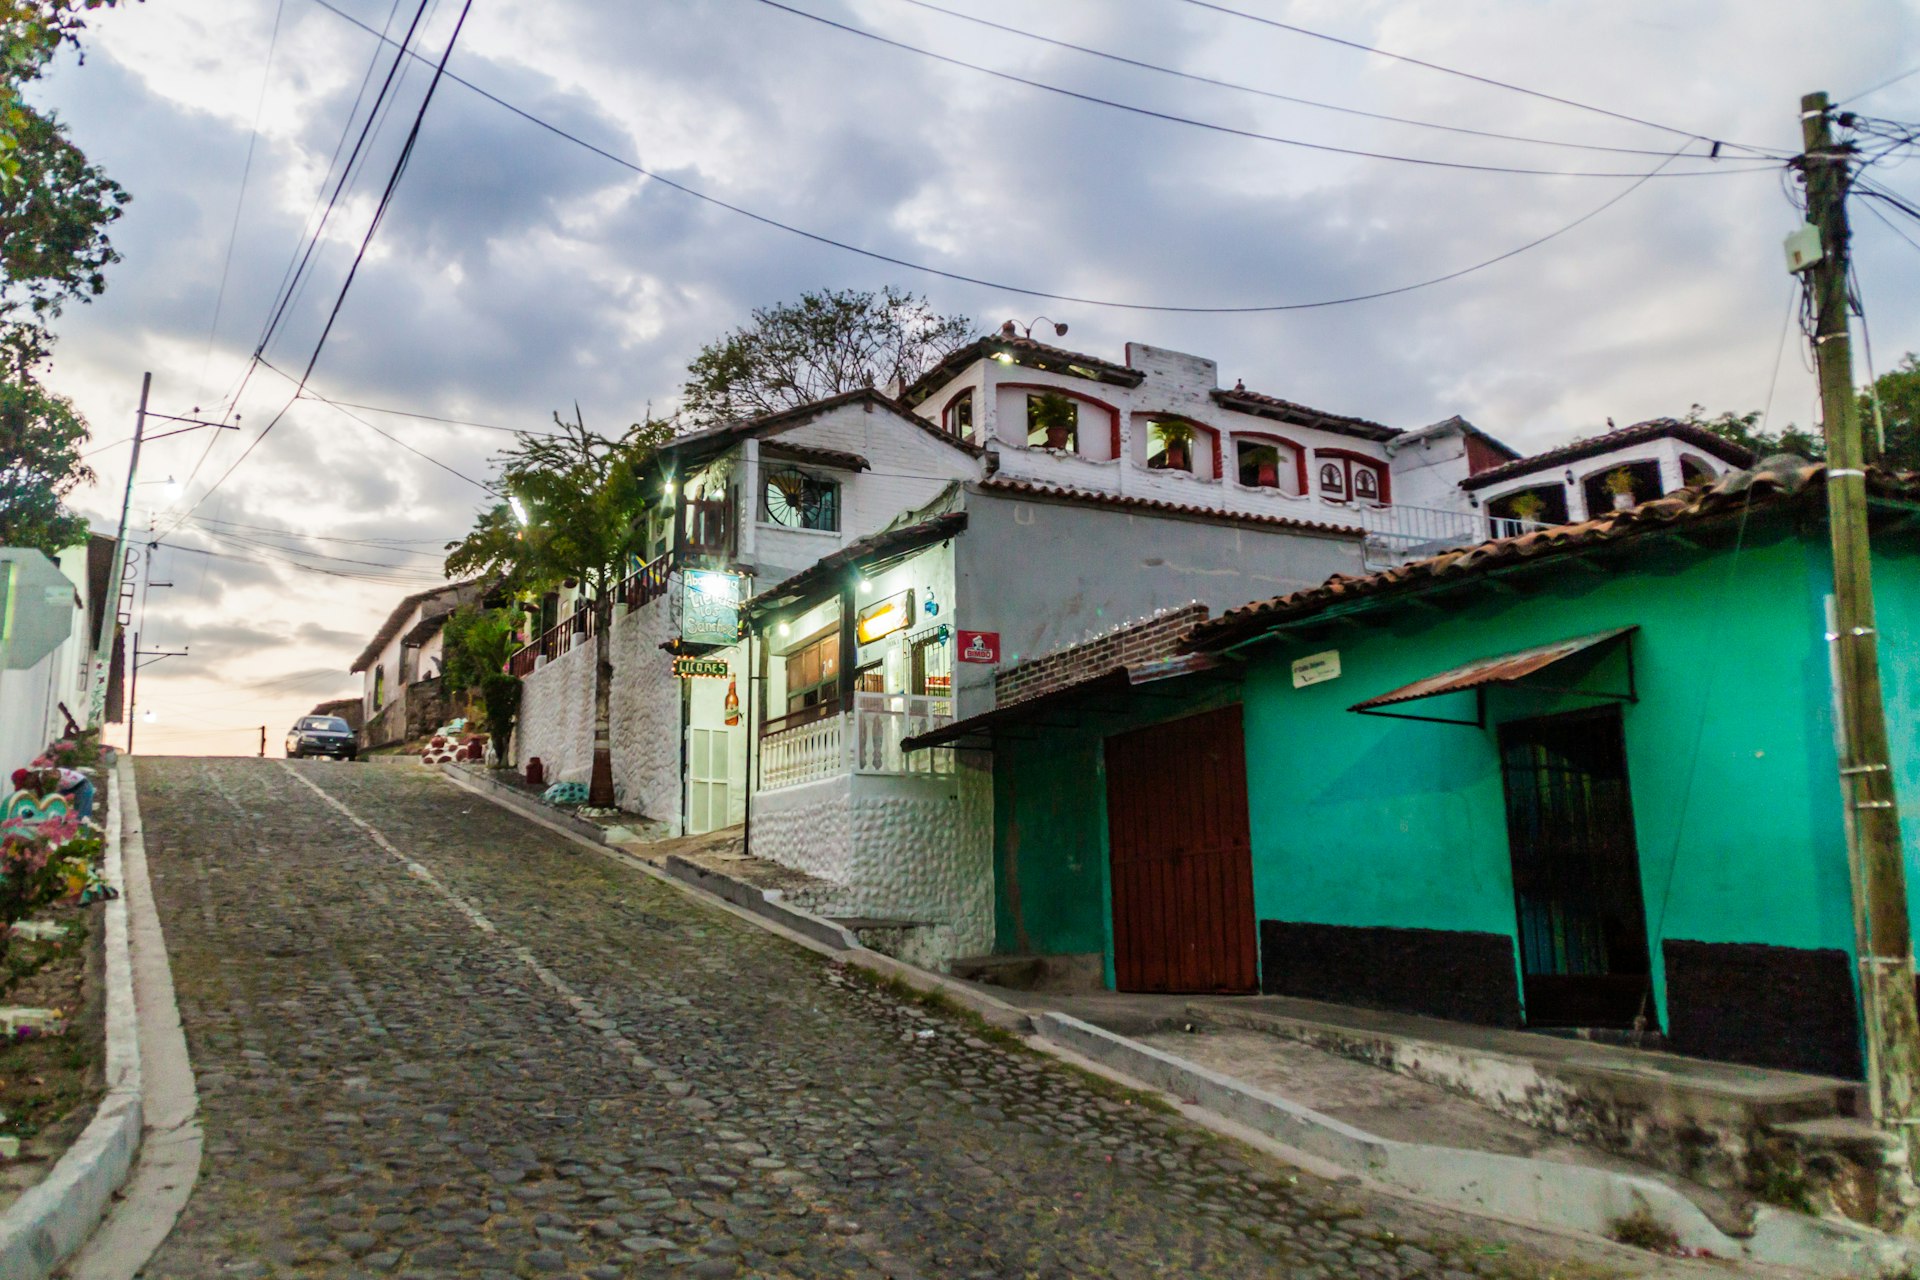 A cobbled street in Suchitoto, El Salvador